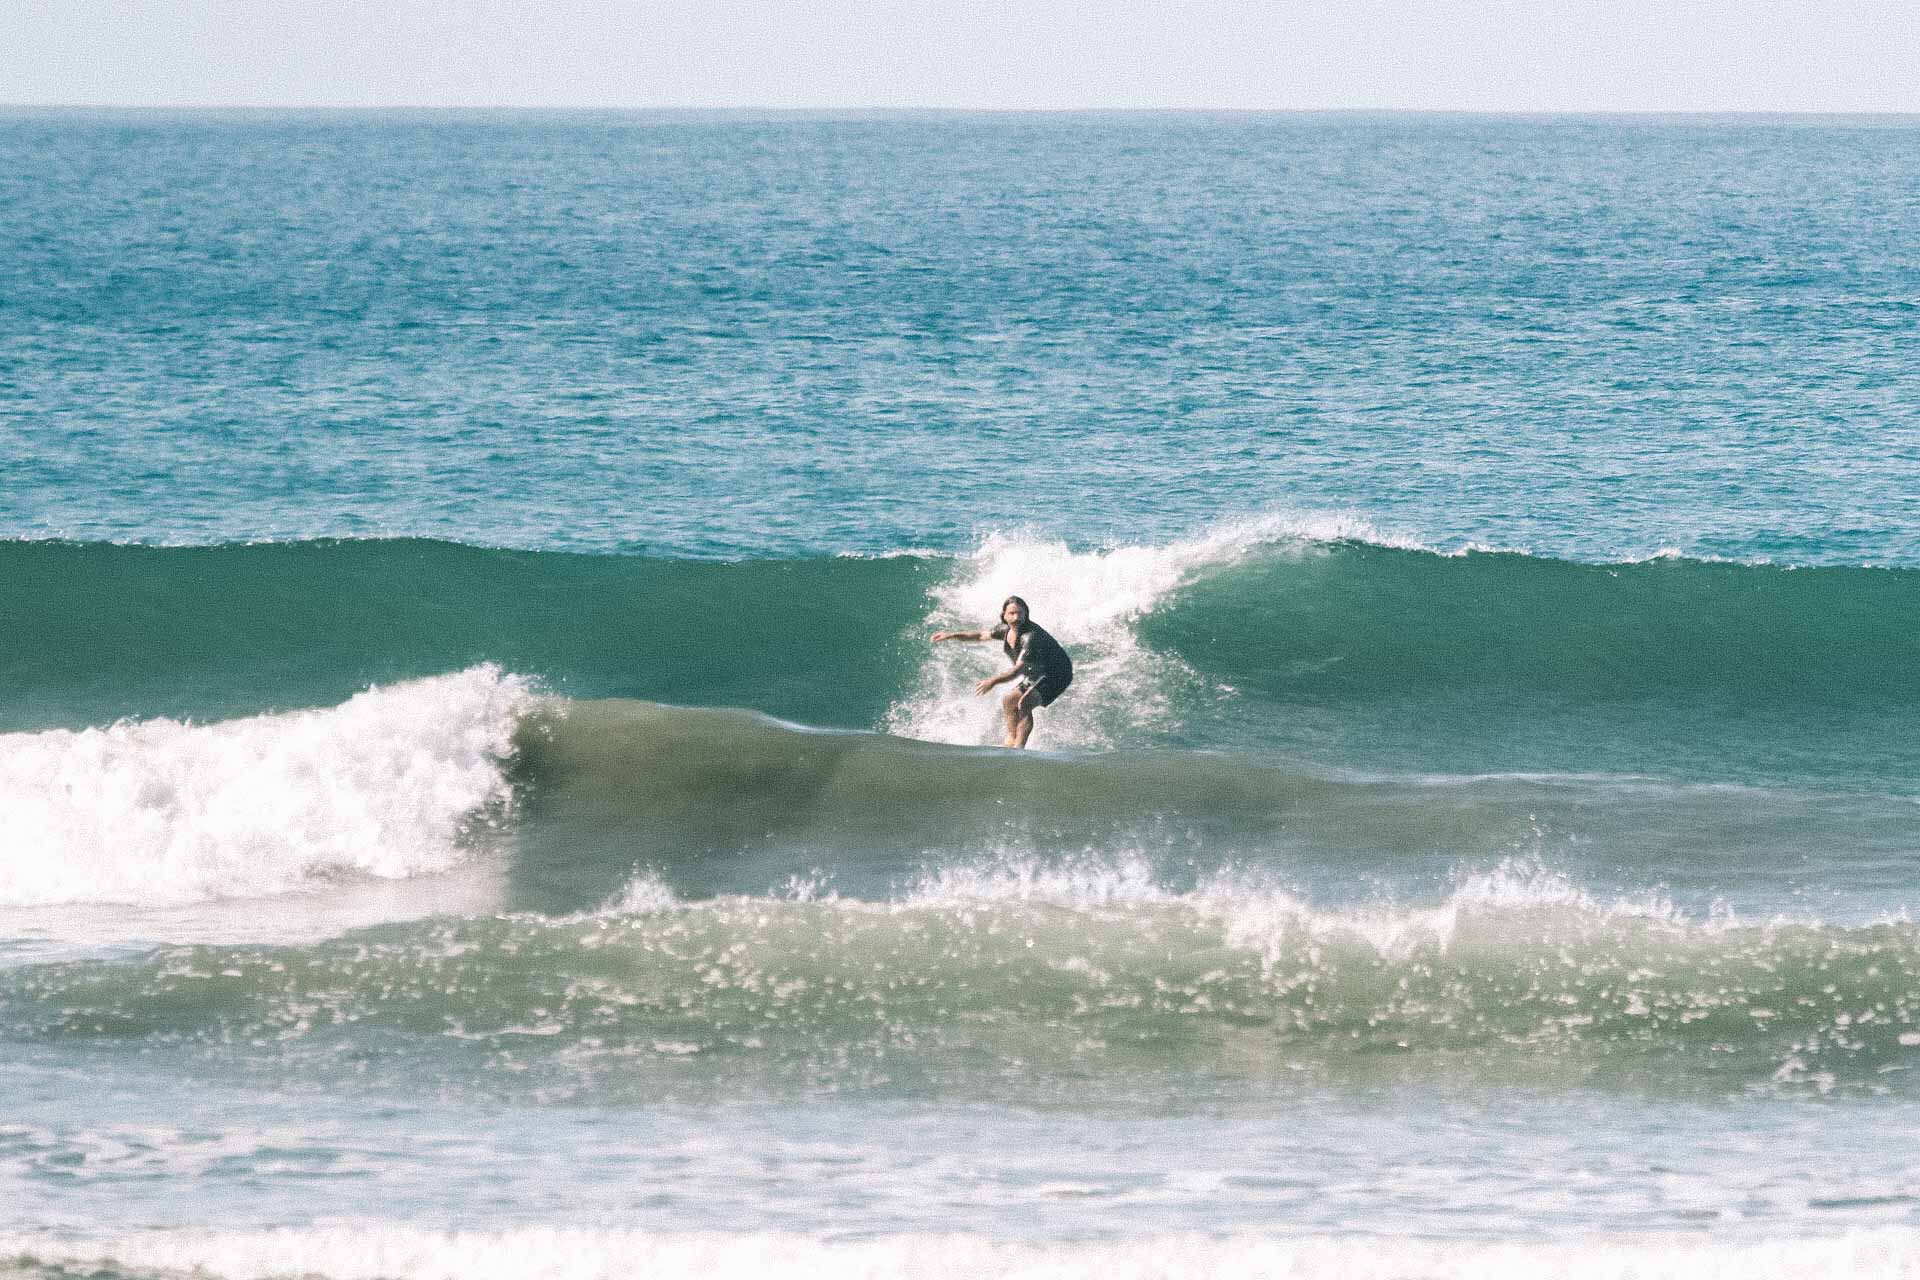 Surfer backside turning on a wave 